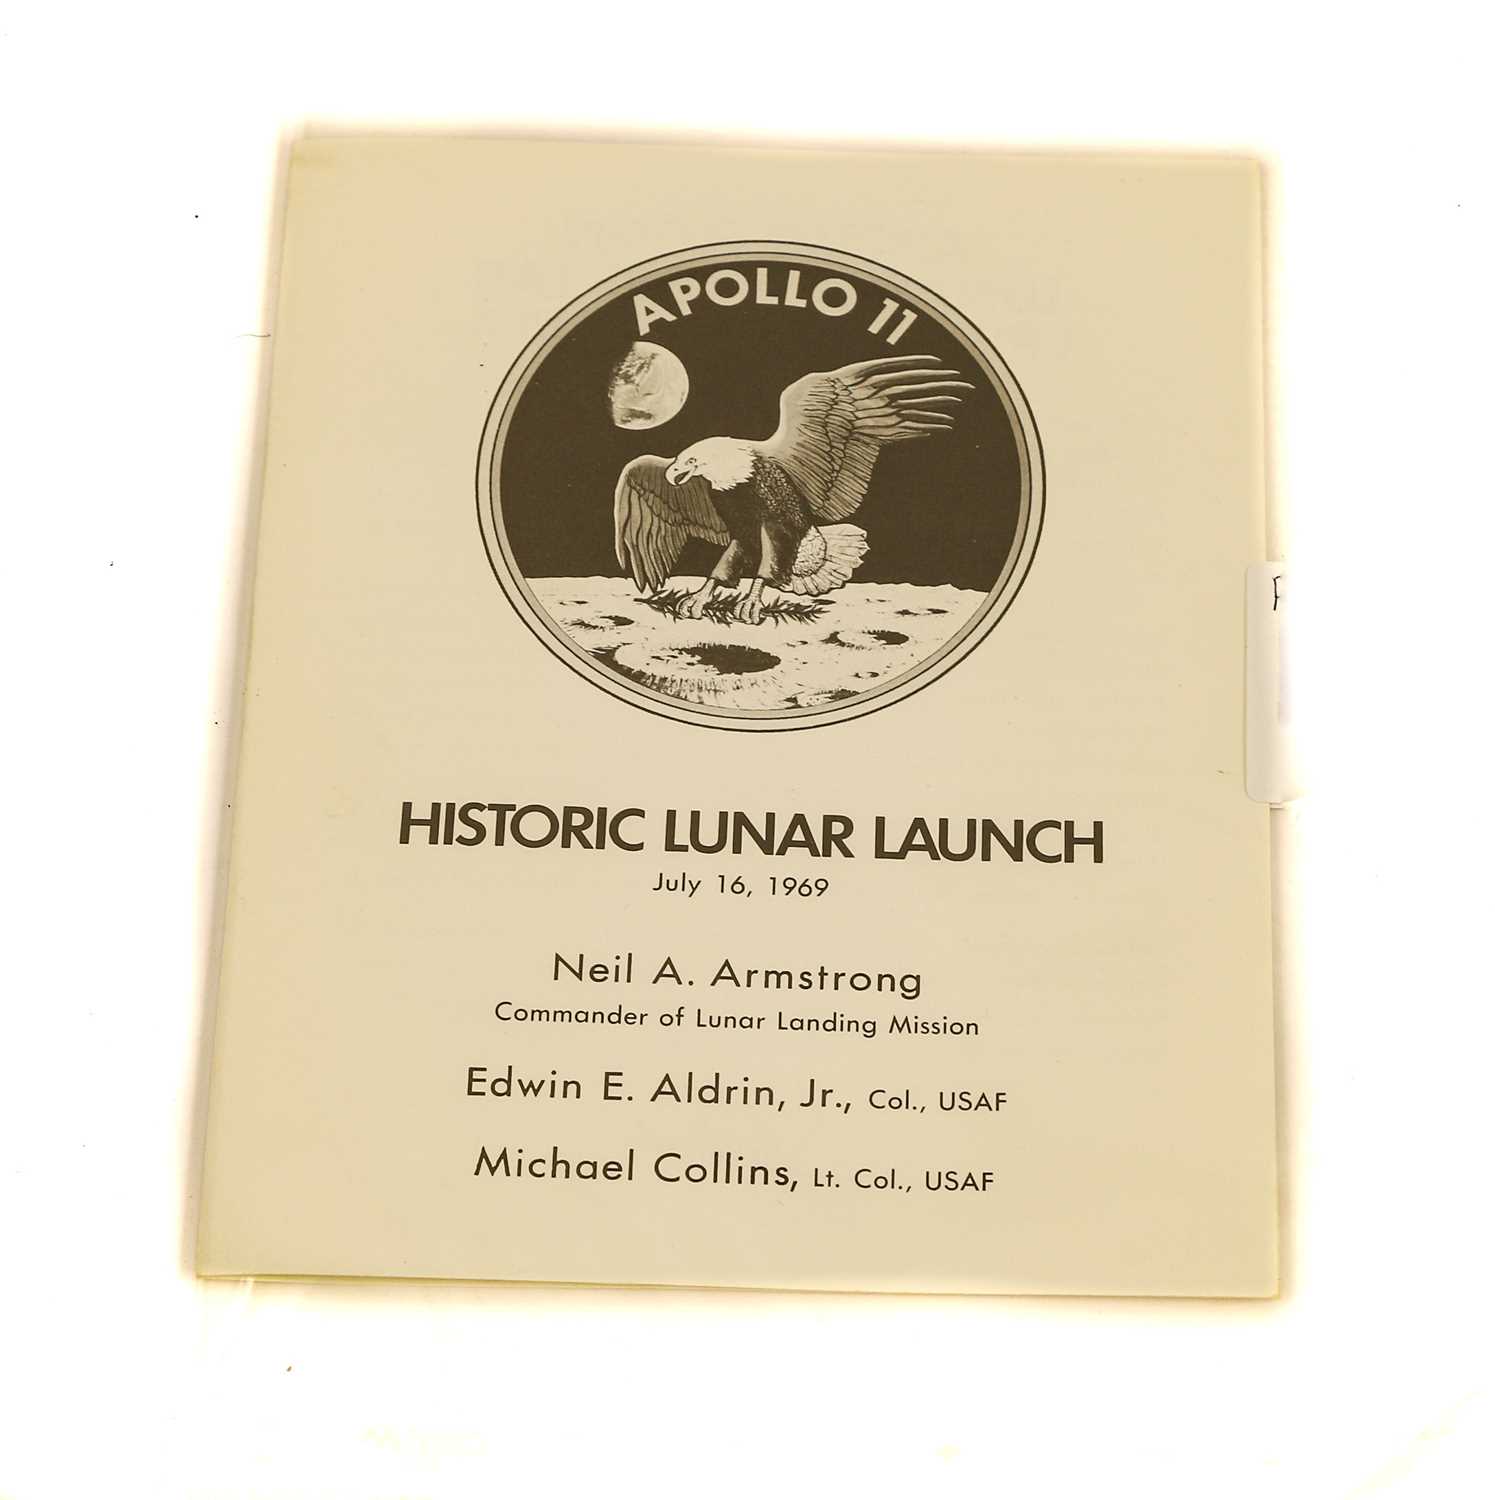 Lot 58 - Apollo 11 Historic Lunar Launch Commemorative Menu